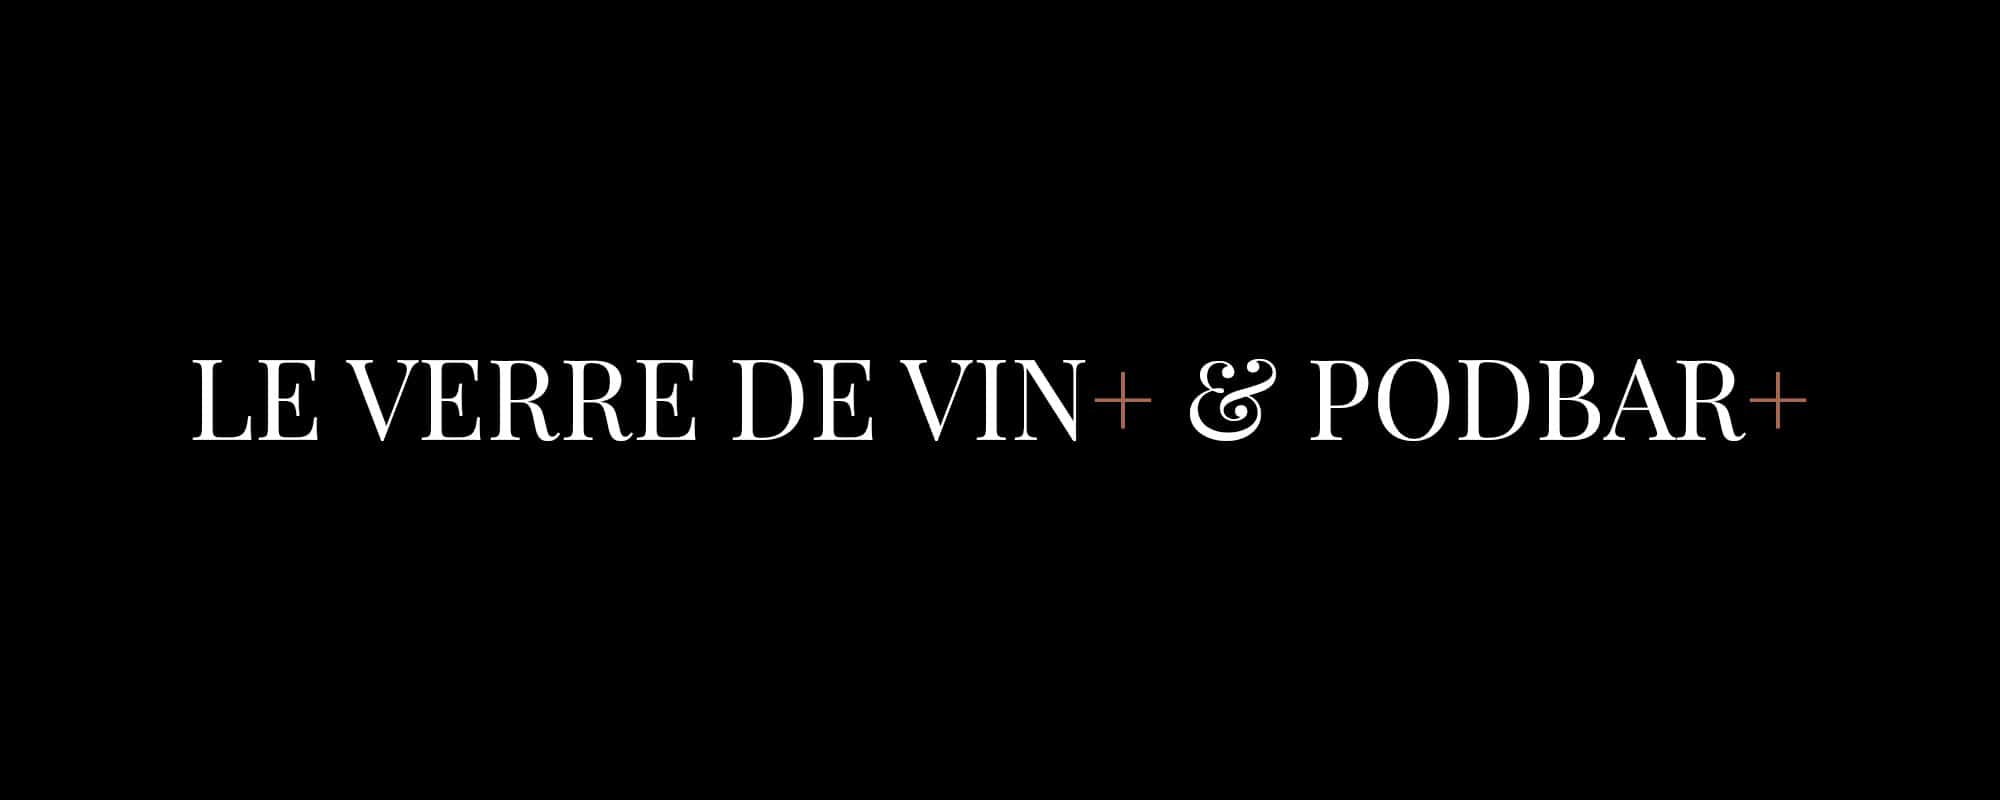 Le Verre de Vin = & PODBAR +